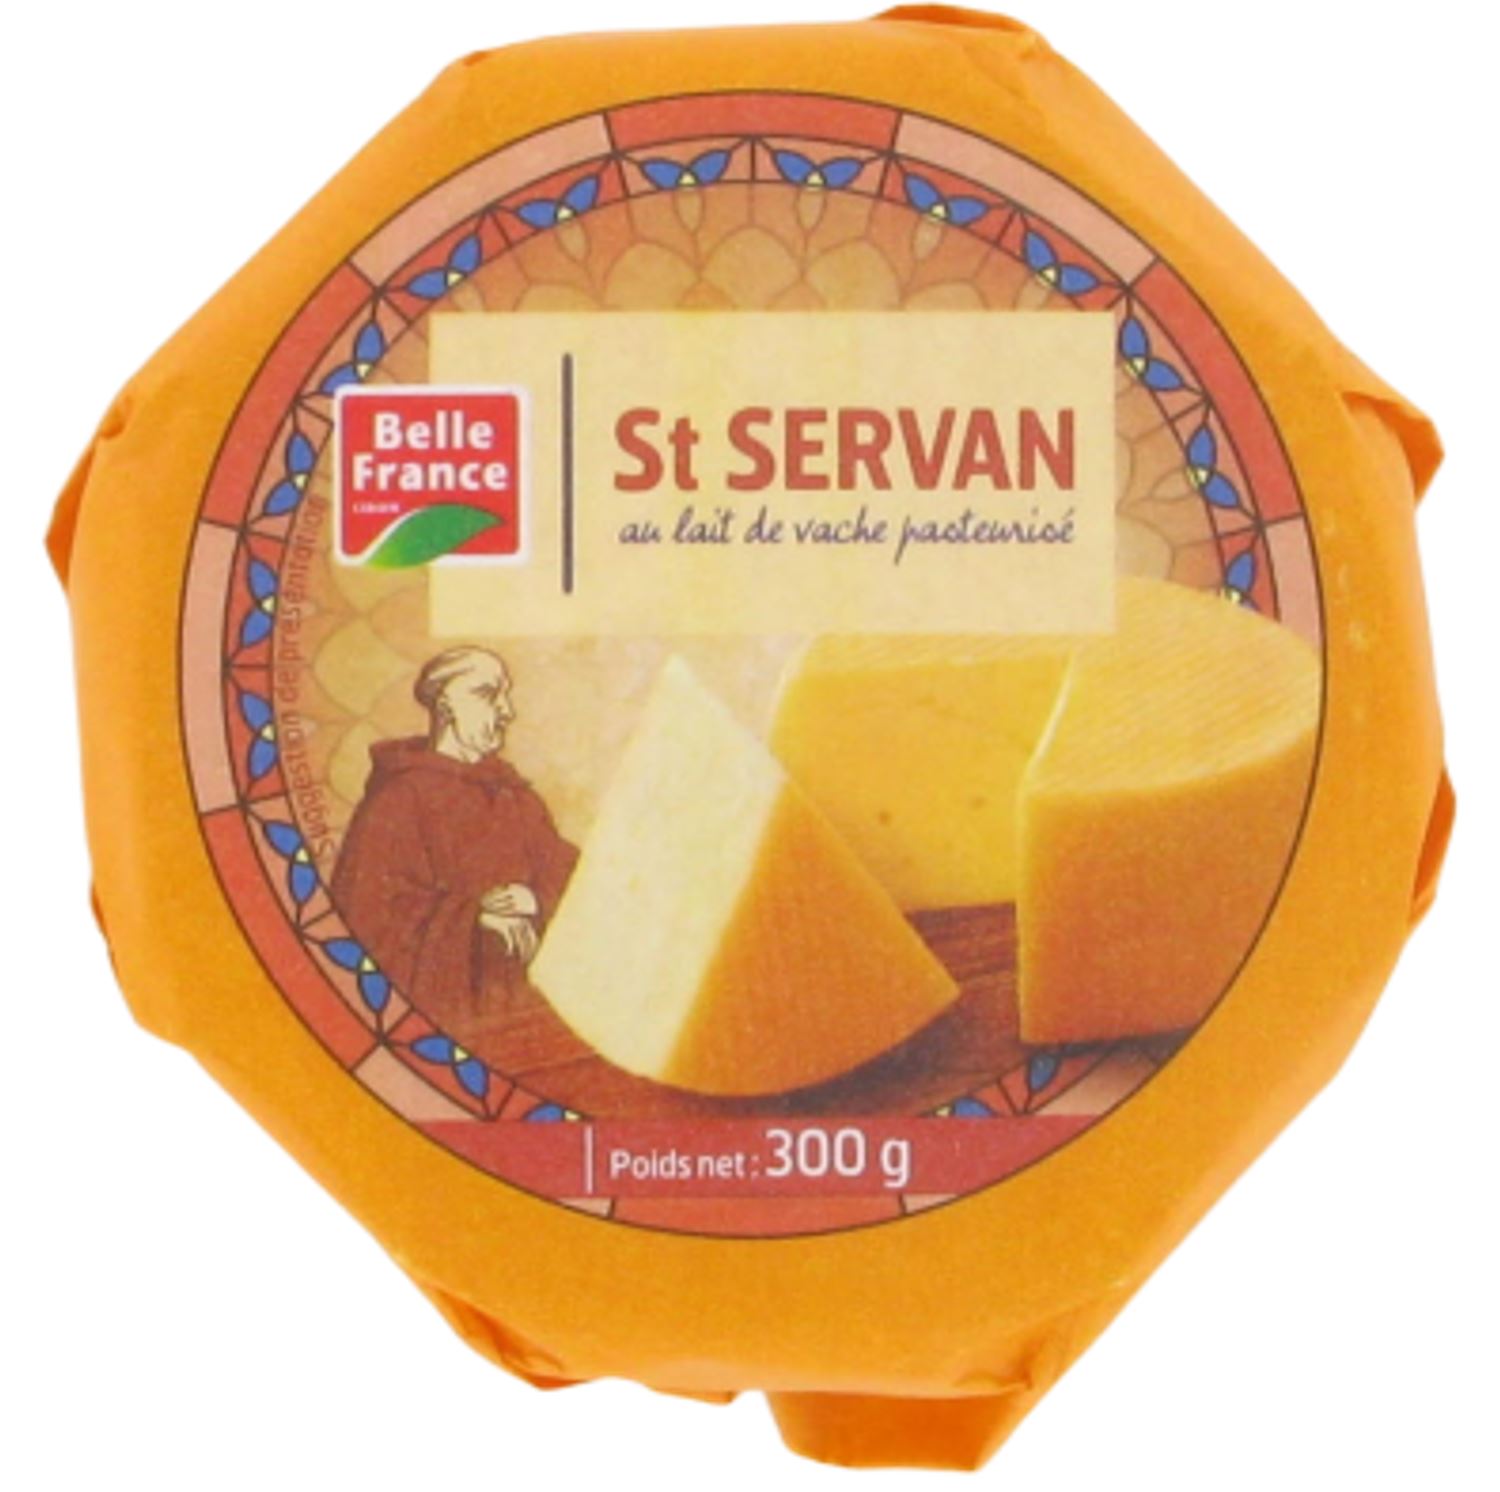 St Servan lait de vache pasteurise